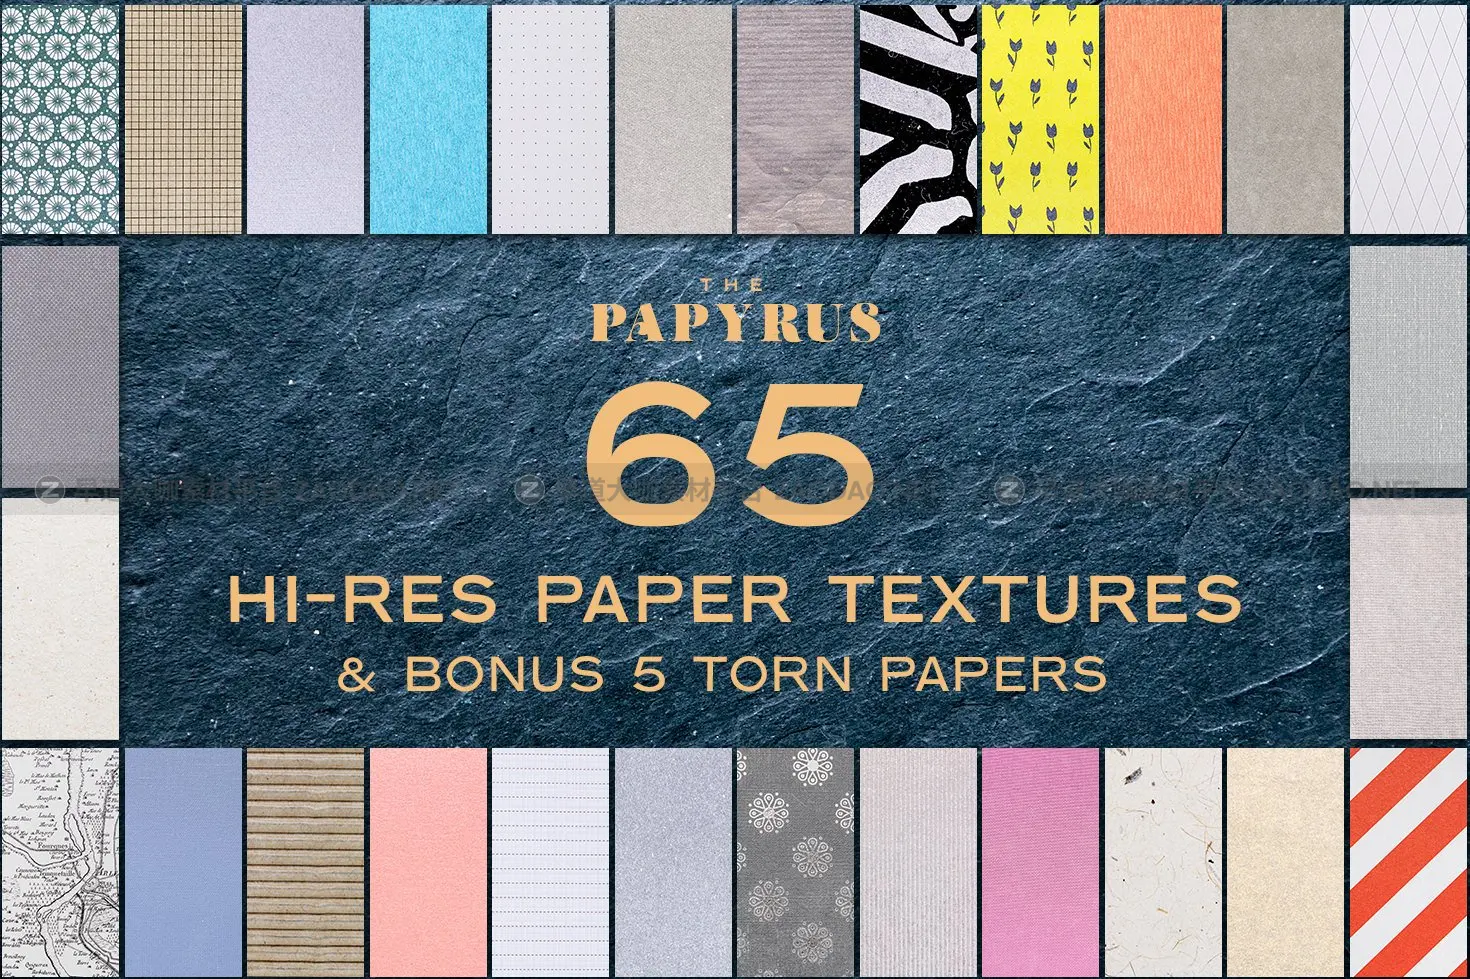 65款复古绘画莎草纸张纹理素材 The Papyrus – 65 Paper Textures插图1